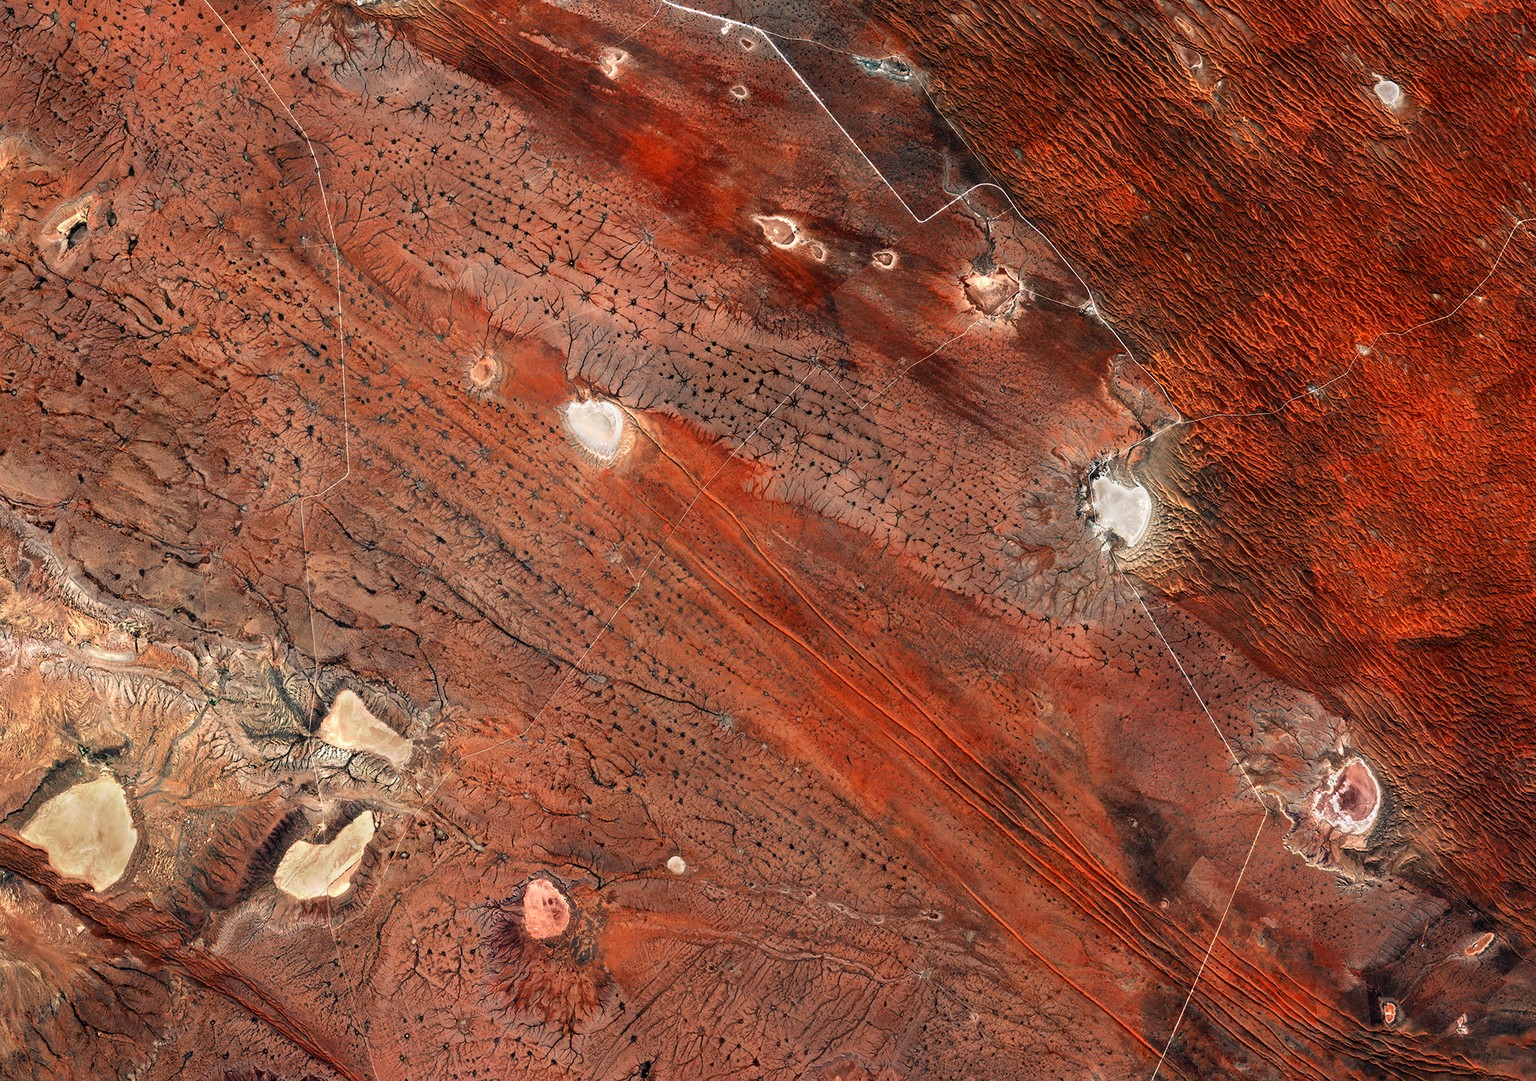 Mars? Nein, die&nbsp;Kalahari-Wüste in Namibia